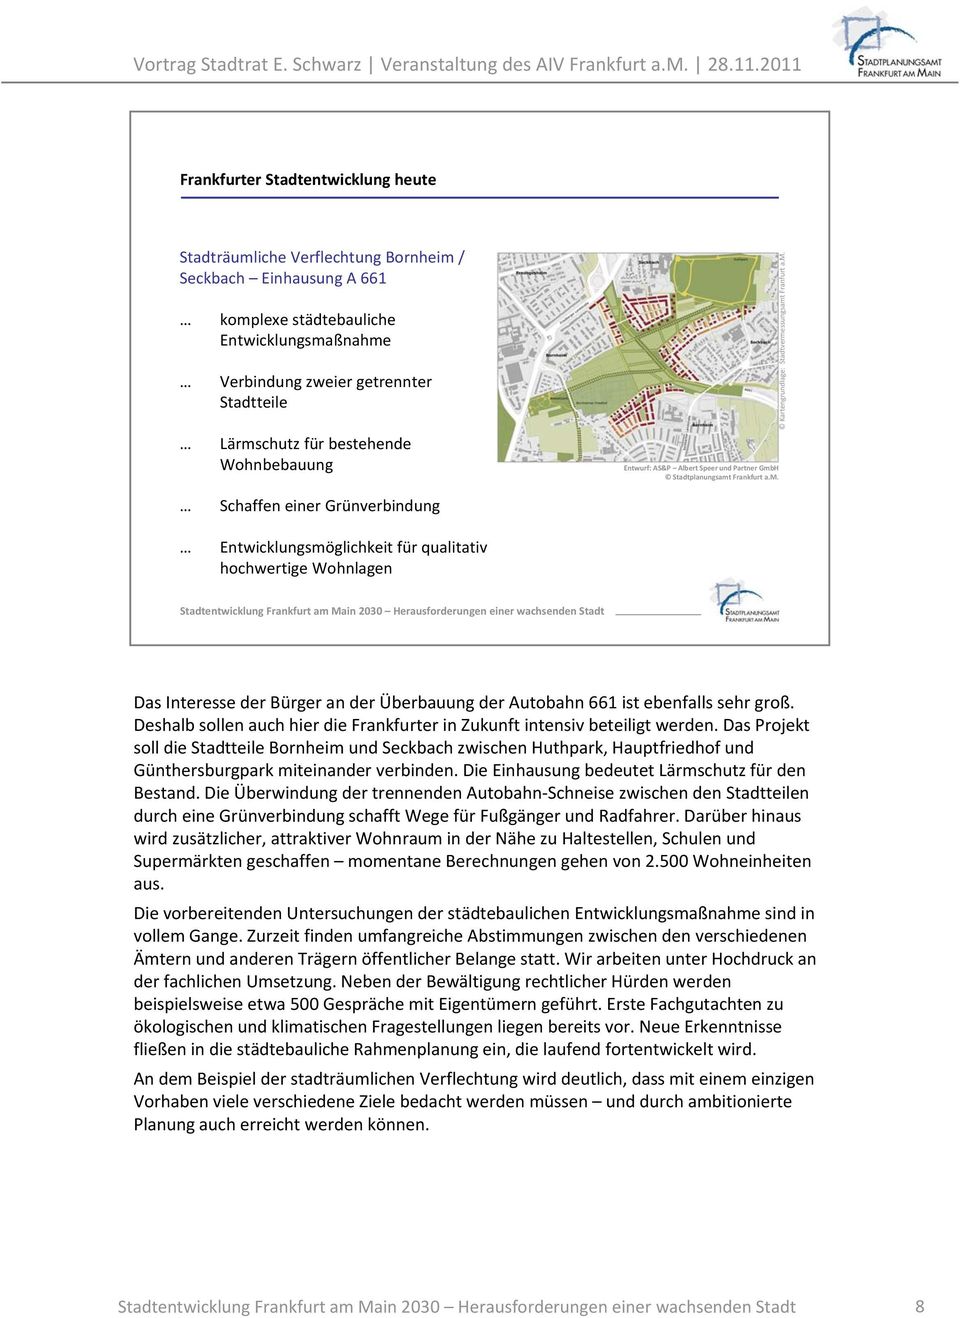 H Stadtplanungsamt Frankfurt a.m. Schaffen einer Grünverbindung Entwicklungsmöglichkeit für qualitativ hochwertige Wohnlagen Das Interesse der Bürger an der Überbauung der Autobahn 661 ist ebenfalls sehr groß.